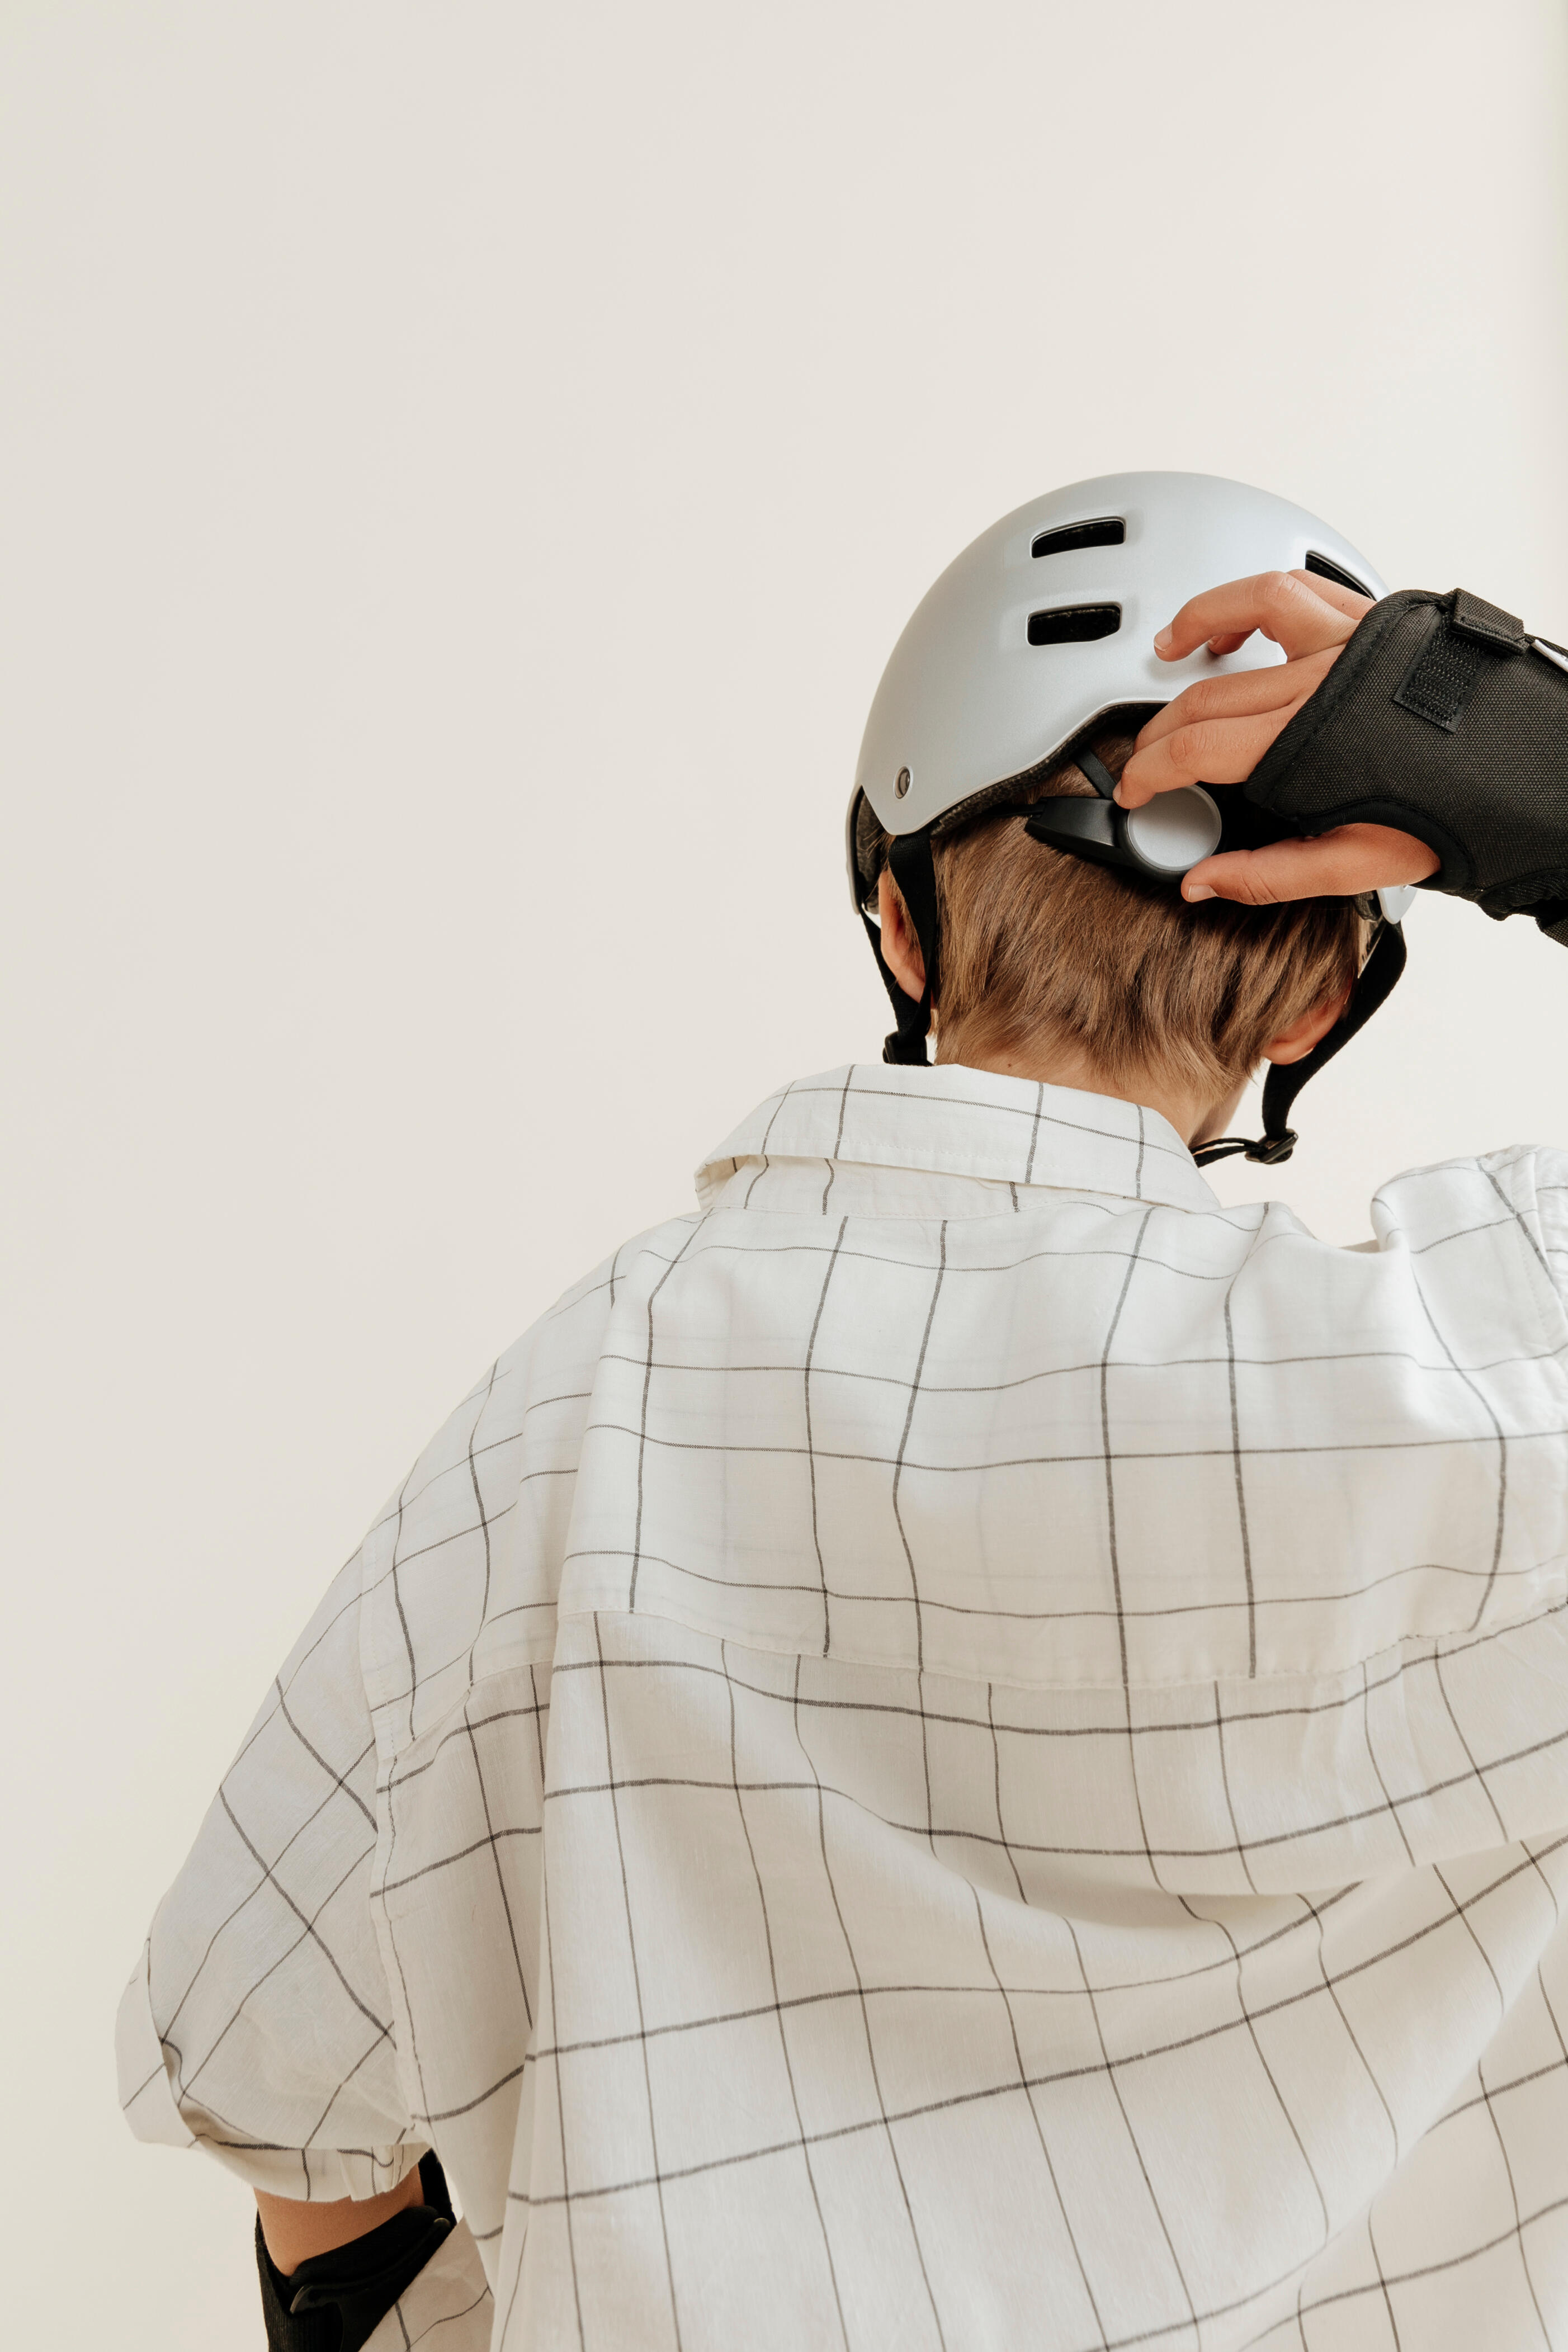 Adjustable Skate Helmet - MF 500 Grey - OXELO